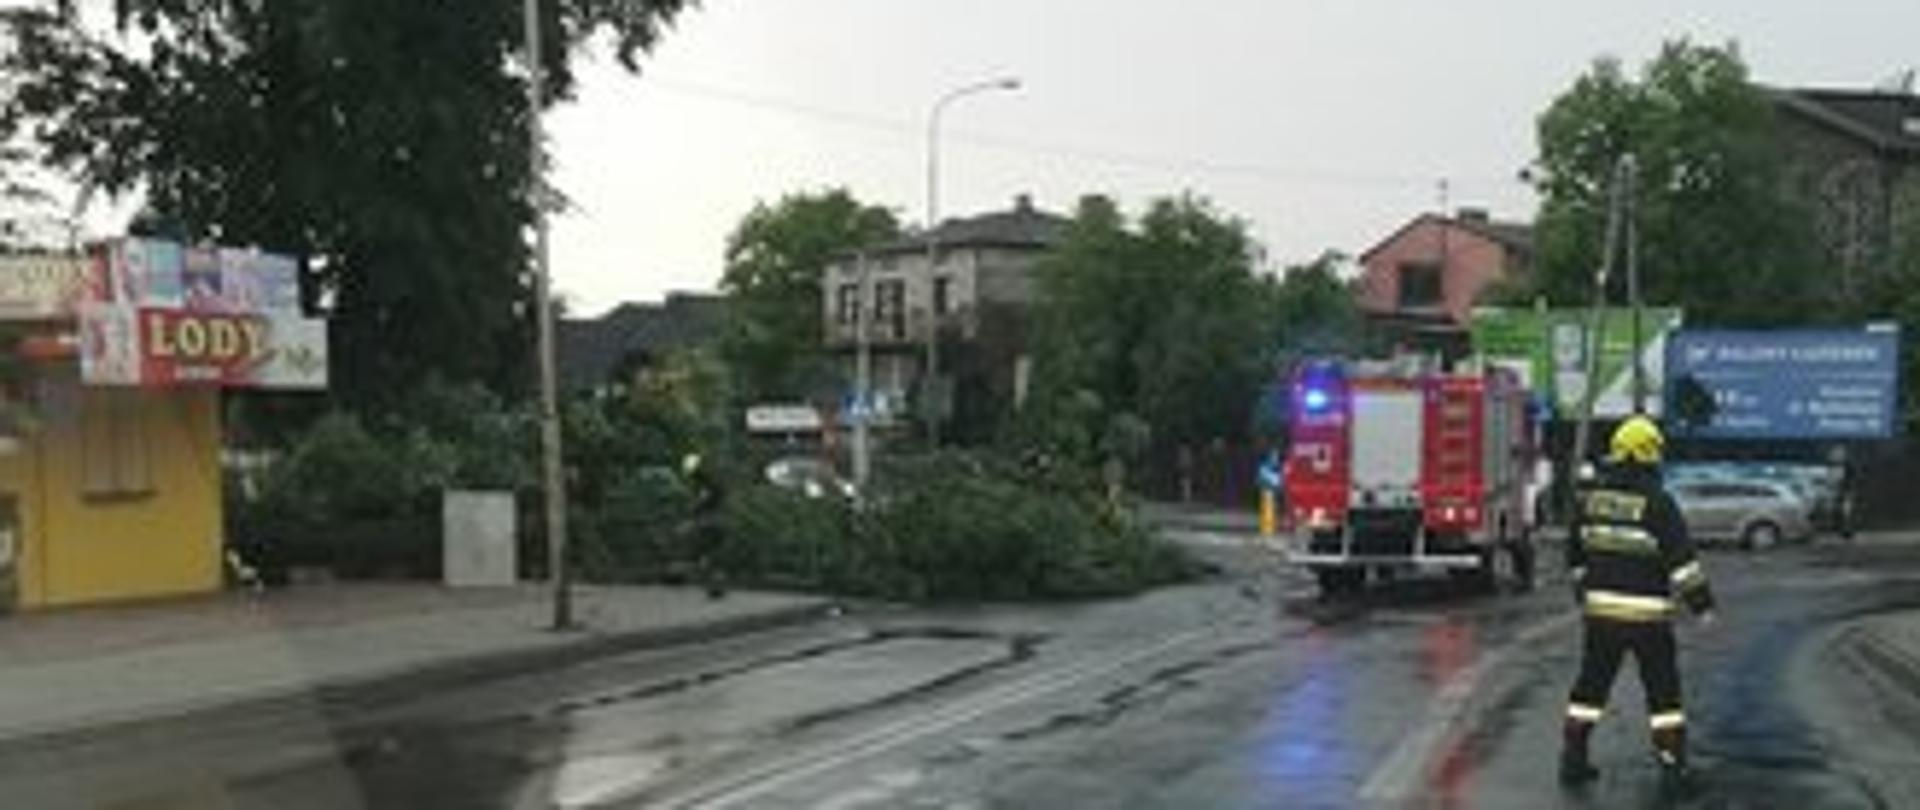 Po lewo powalone drzewo, przy którym stoi samochód strażacki i strażak idzie w stronę samochodu